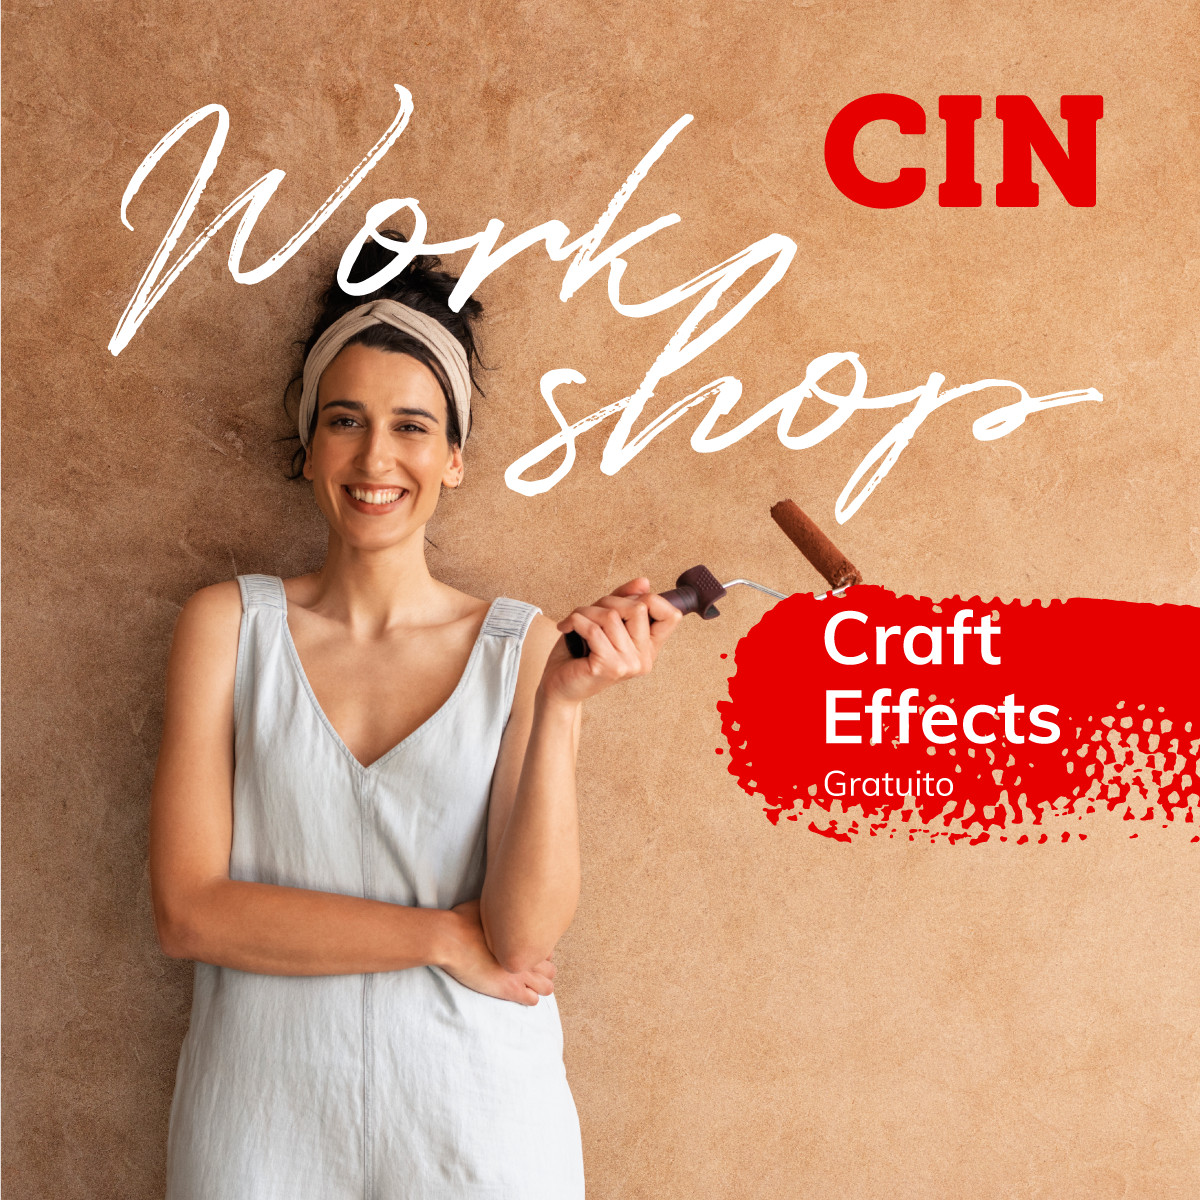 Workshops gratuitos CIN regressam para ensinar técnicas simples de pintura e decoração